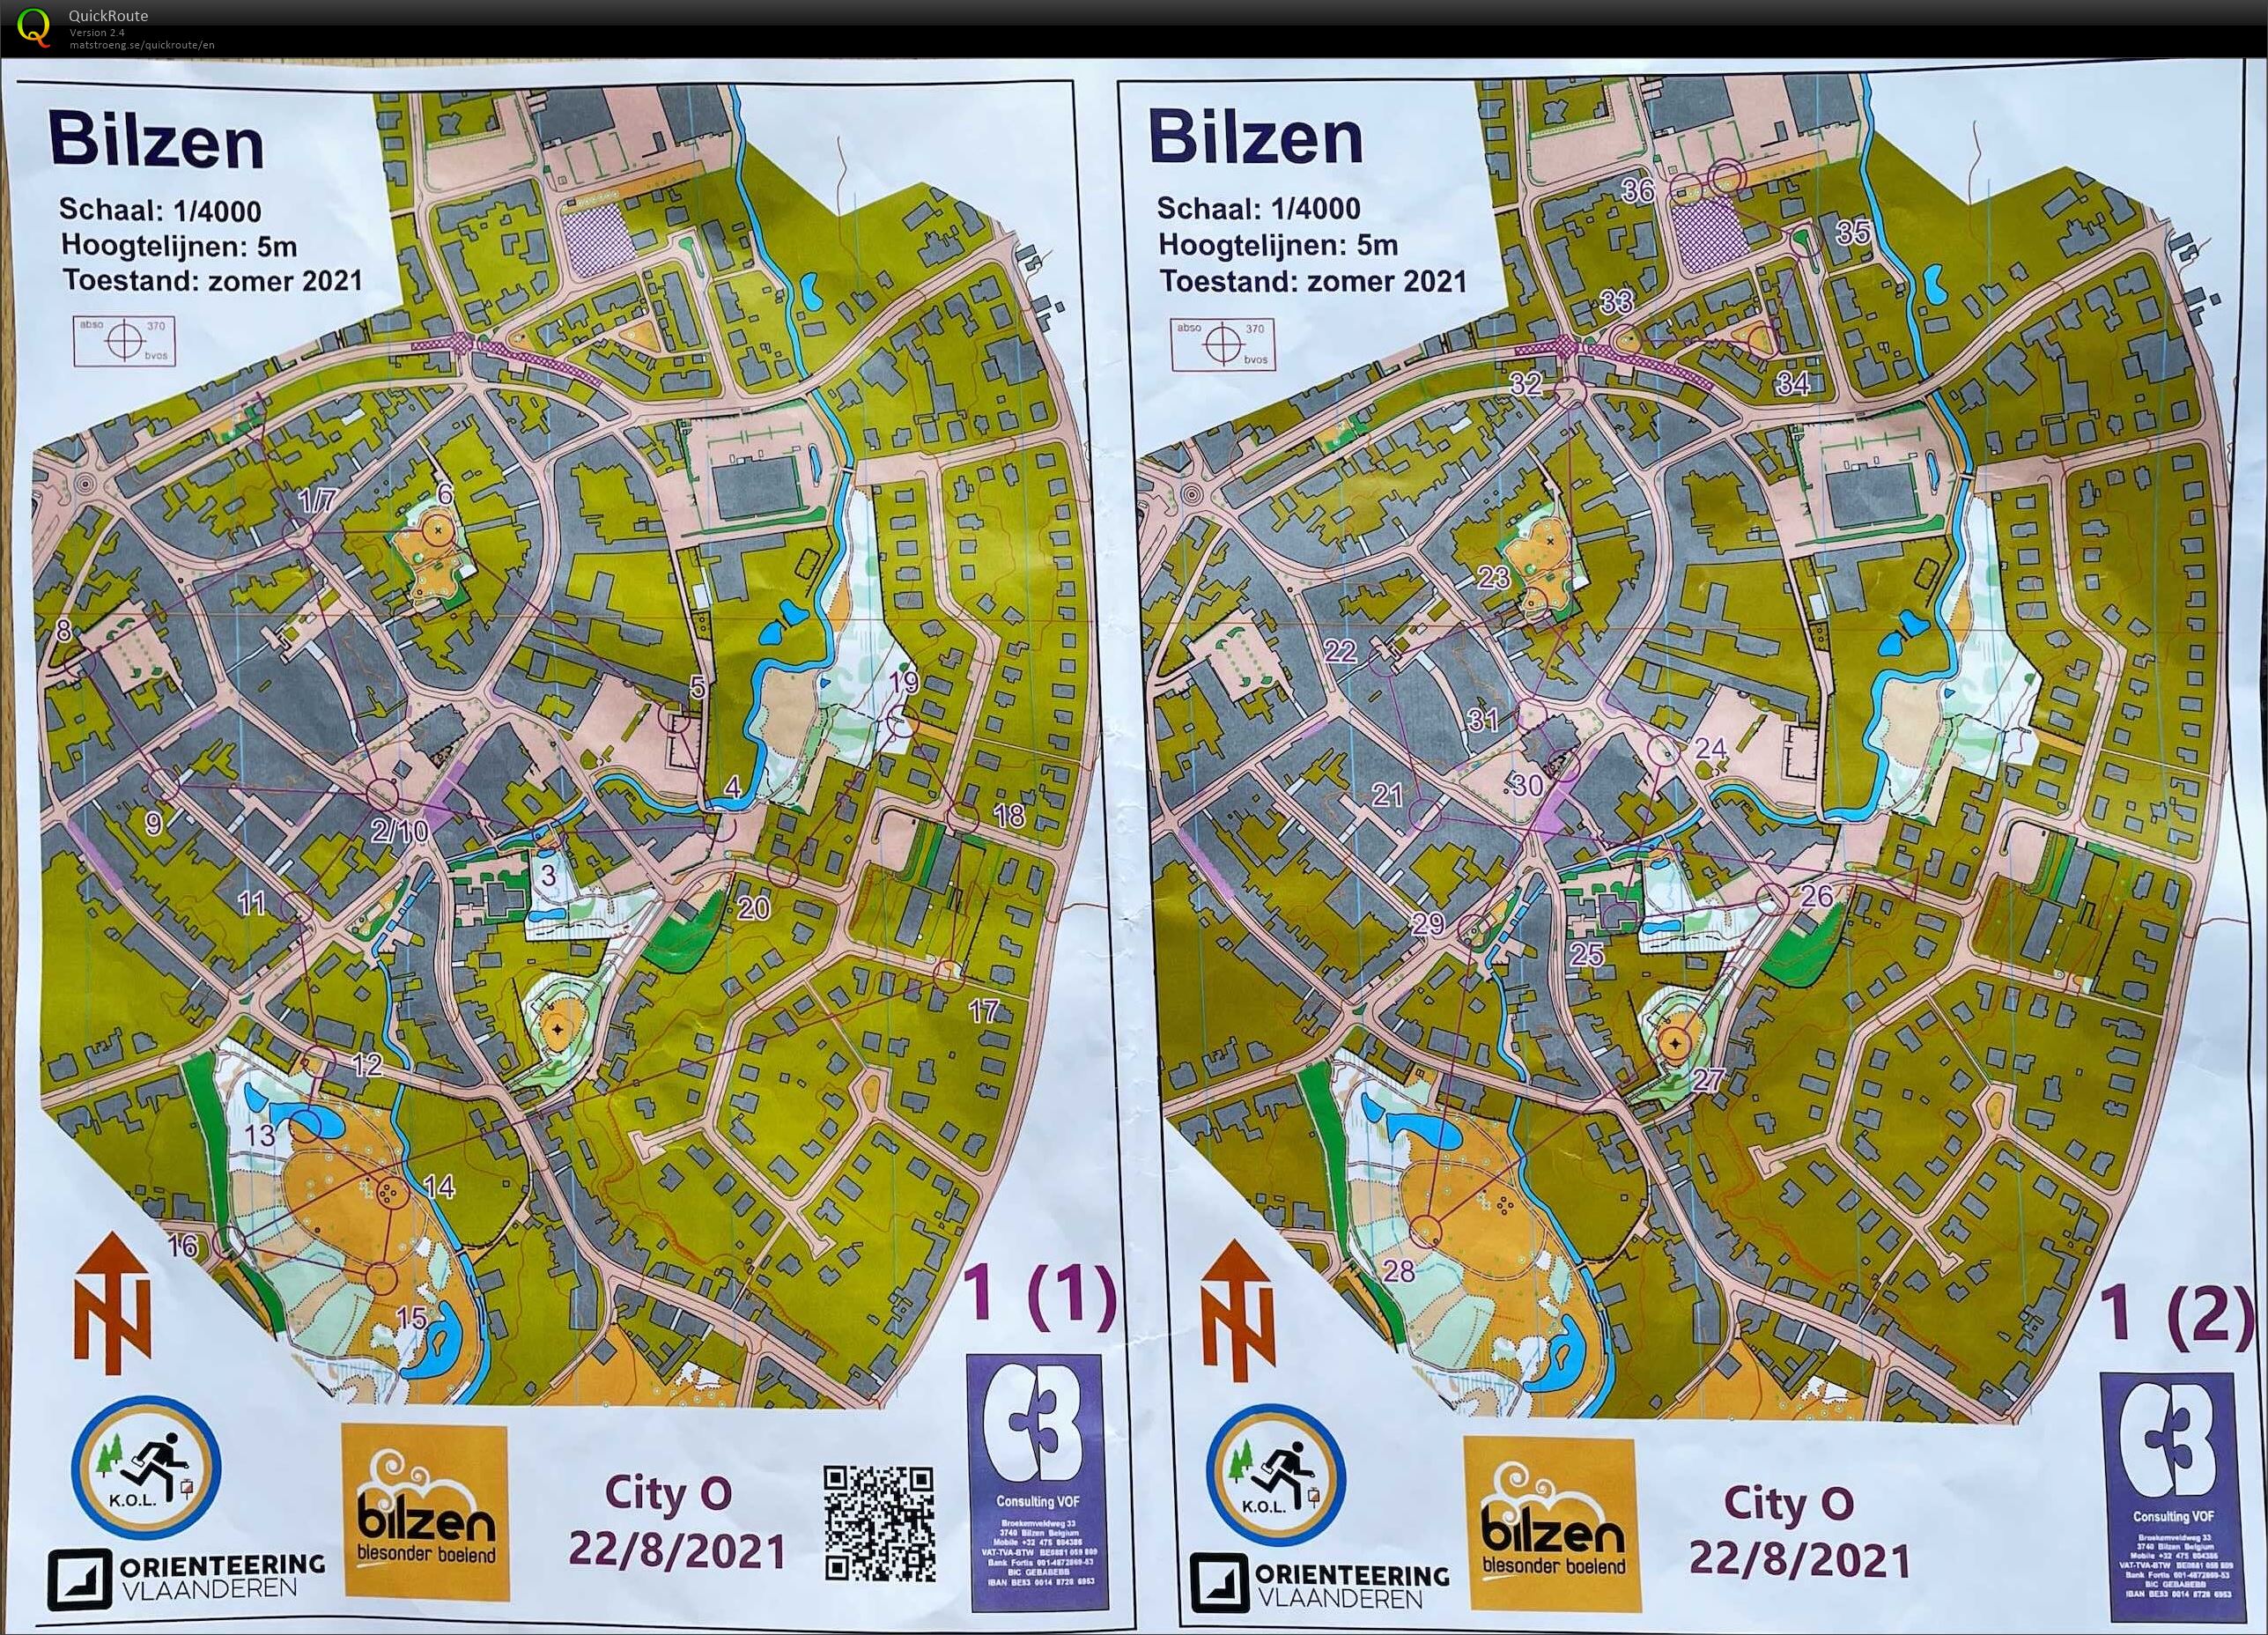 City-O Bilzen (22-08-2021)